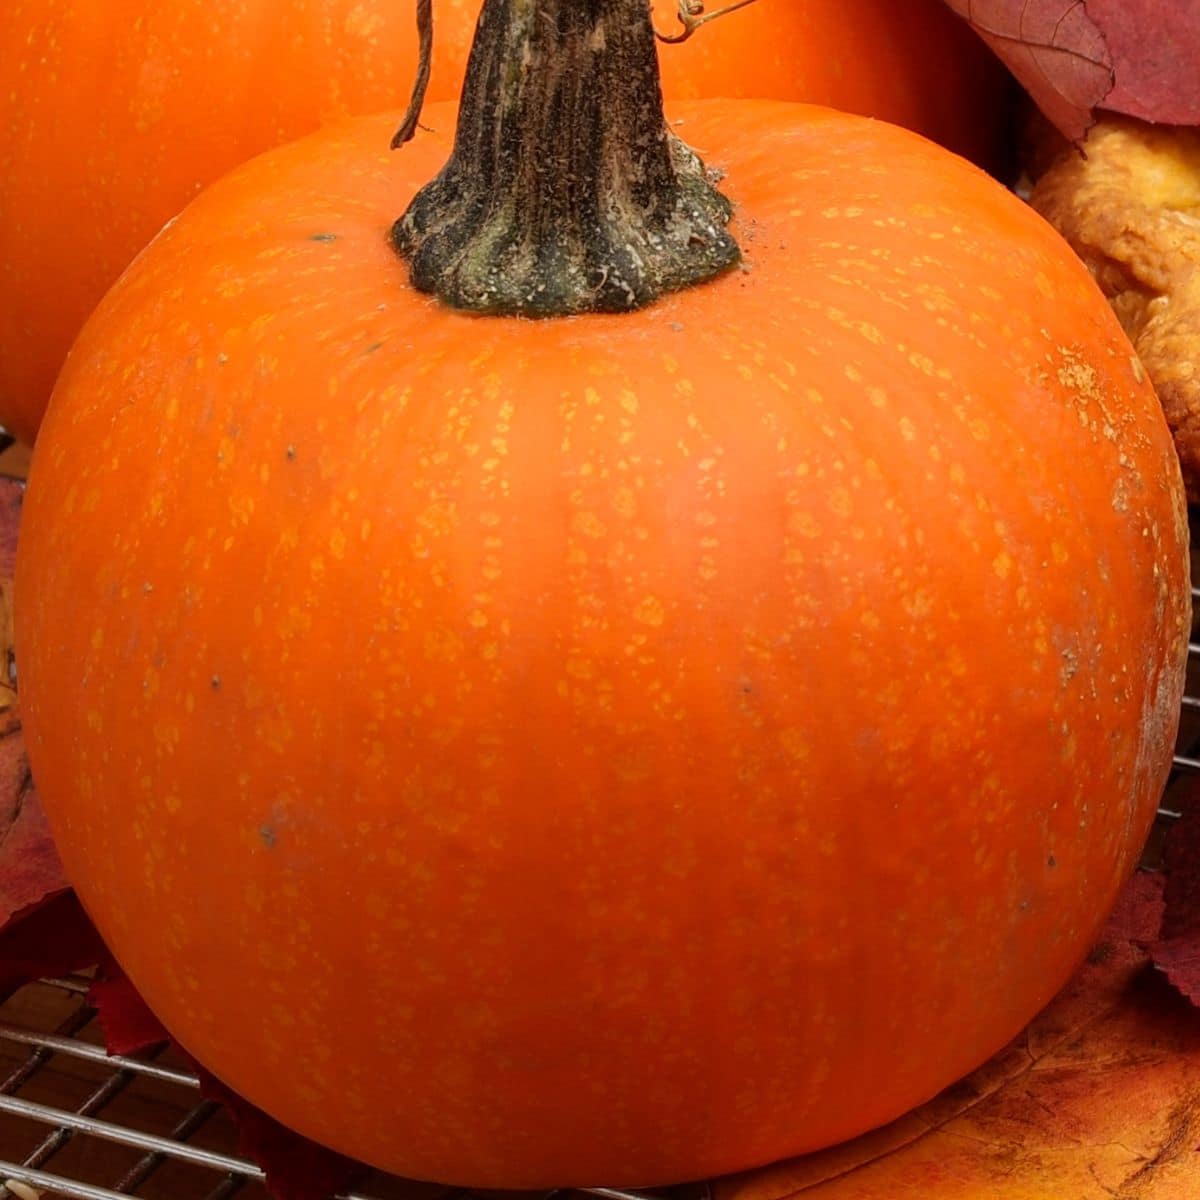 A closeup of a beautiful pie pumpkin.